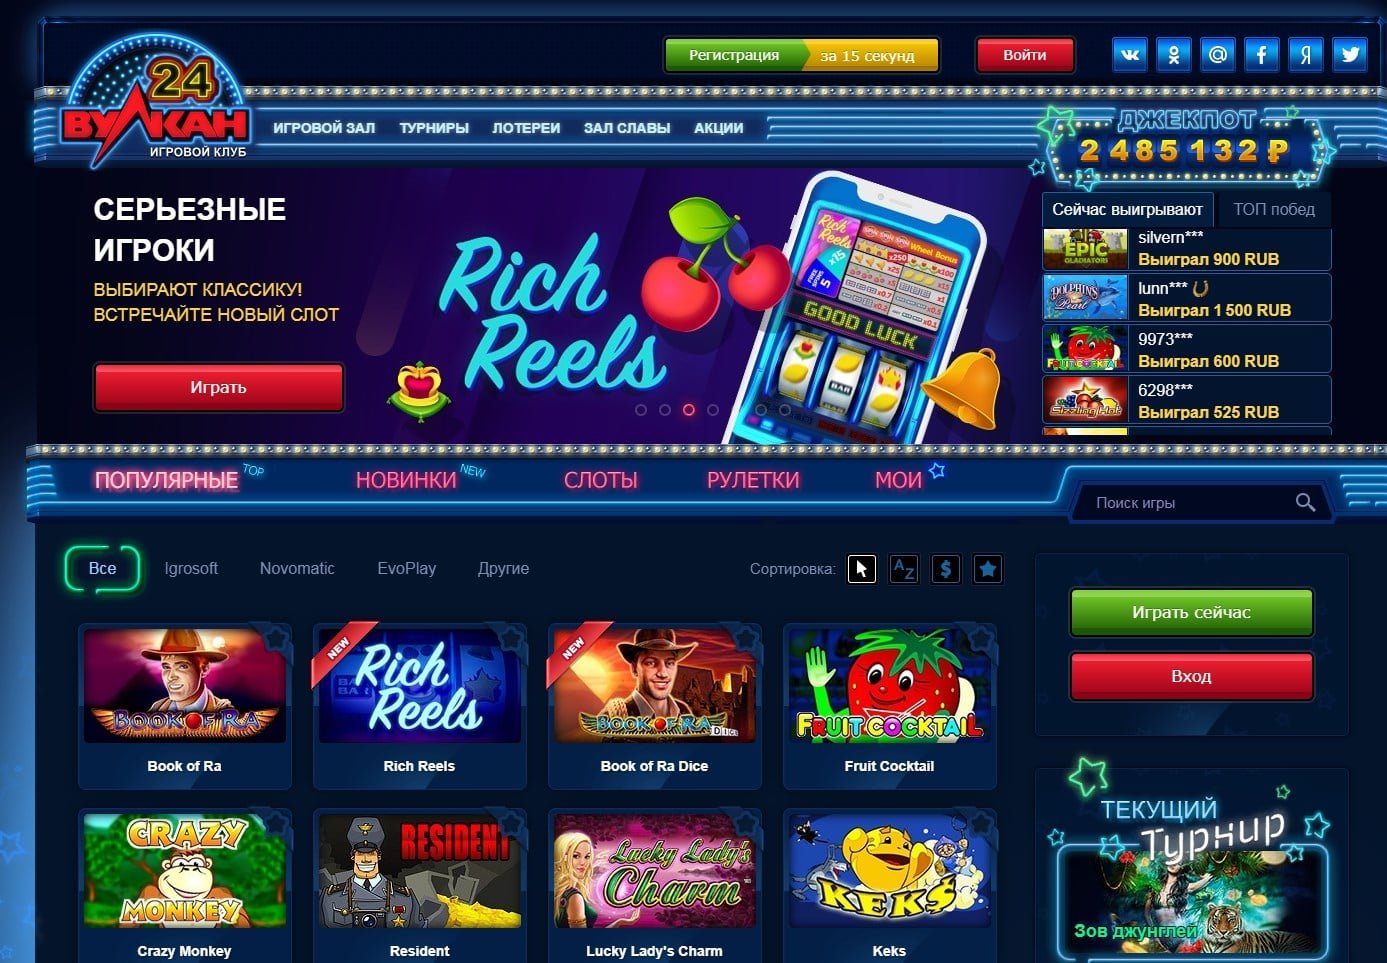 Играть на деньги в казино вулкан официальный сайт ворлд покер клаб играть онлайн